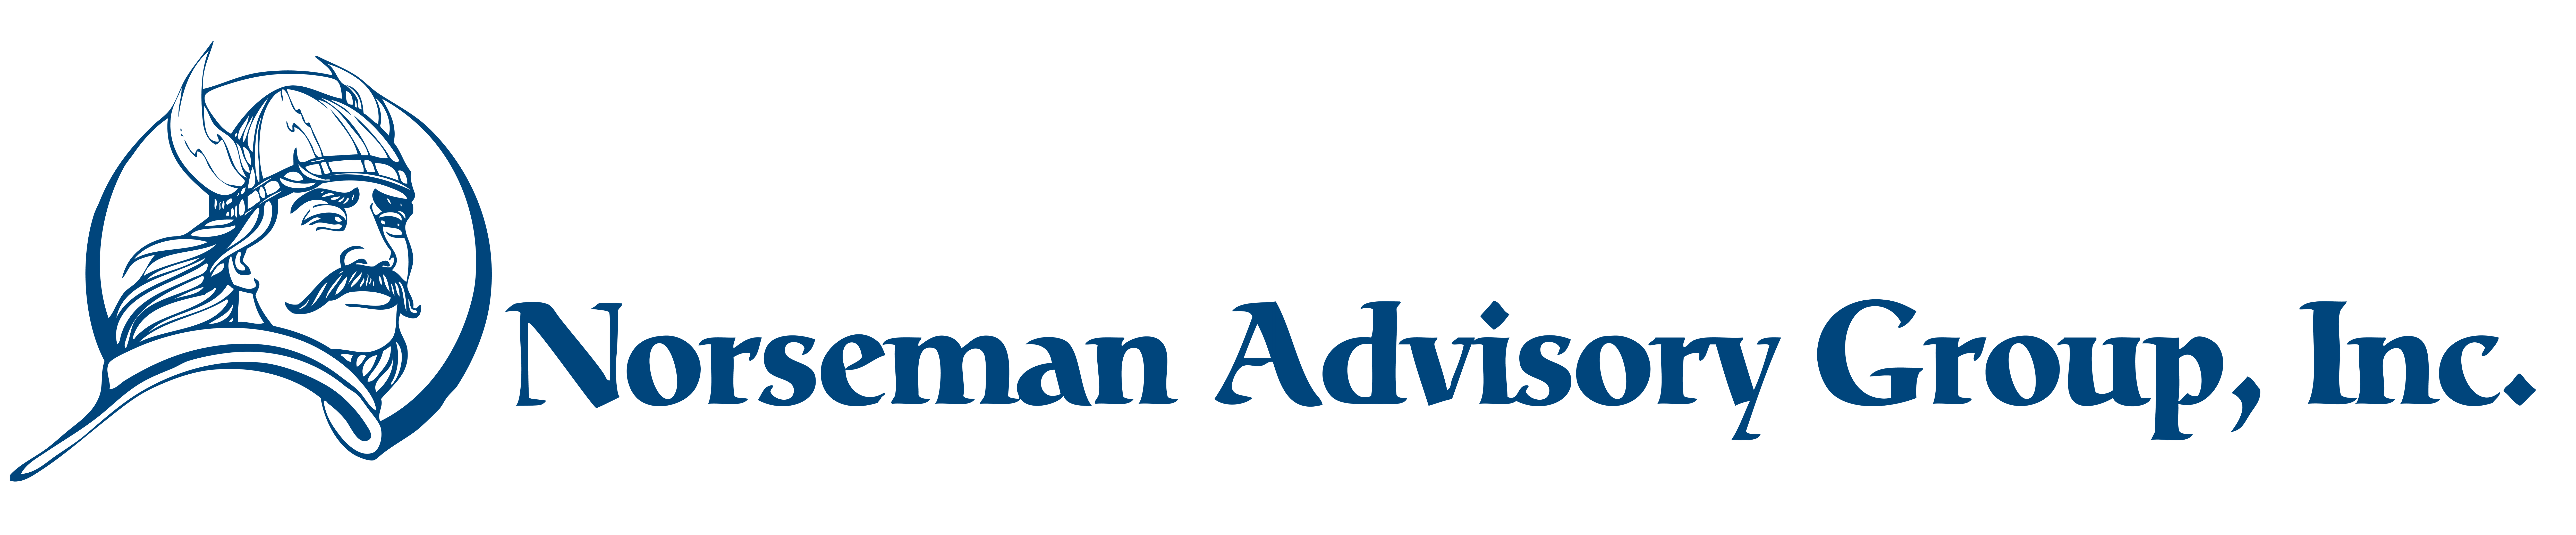 Norseman Advisory Group, Inc.